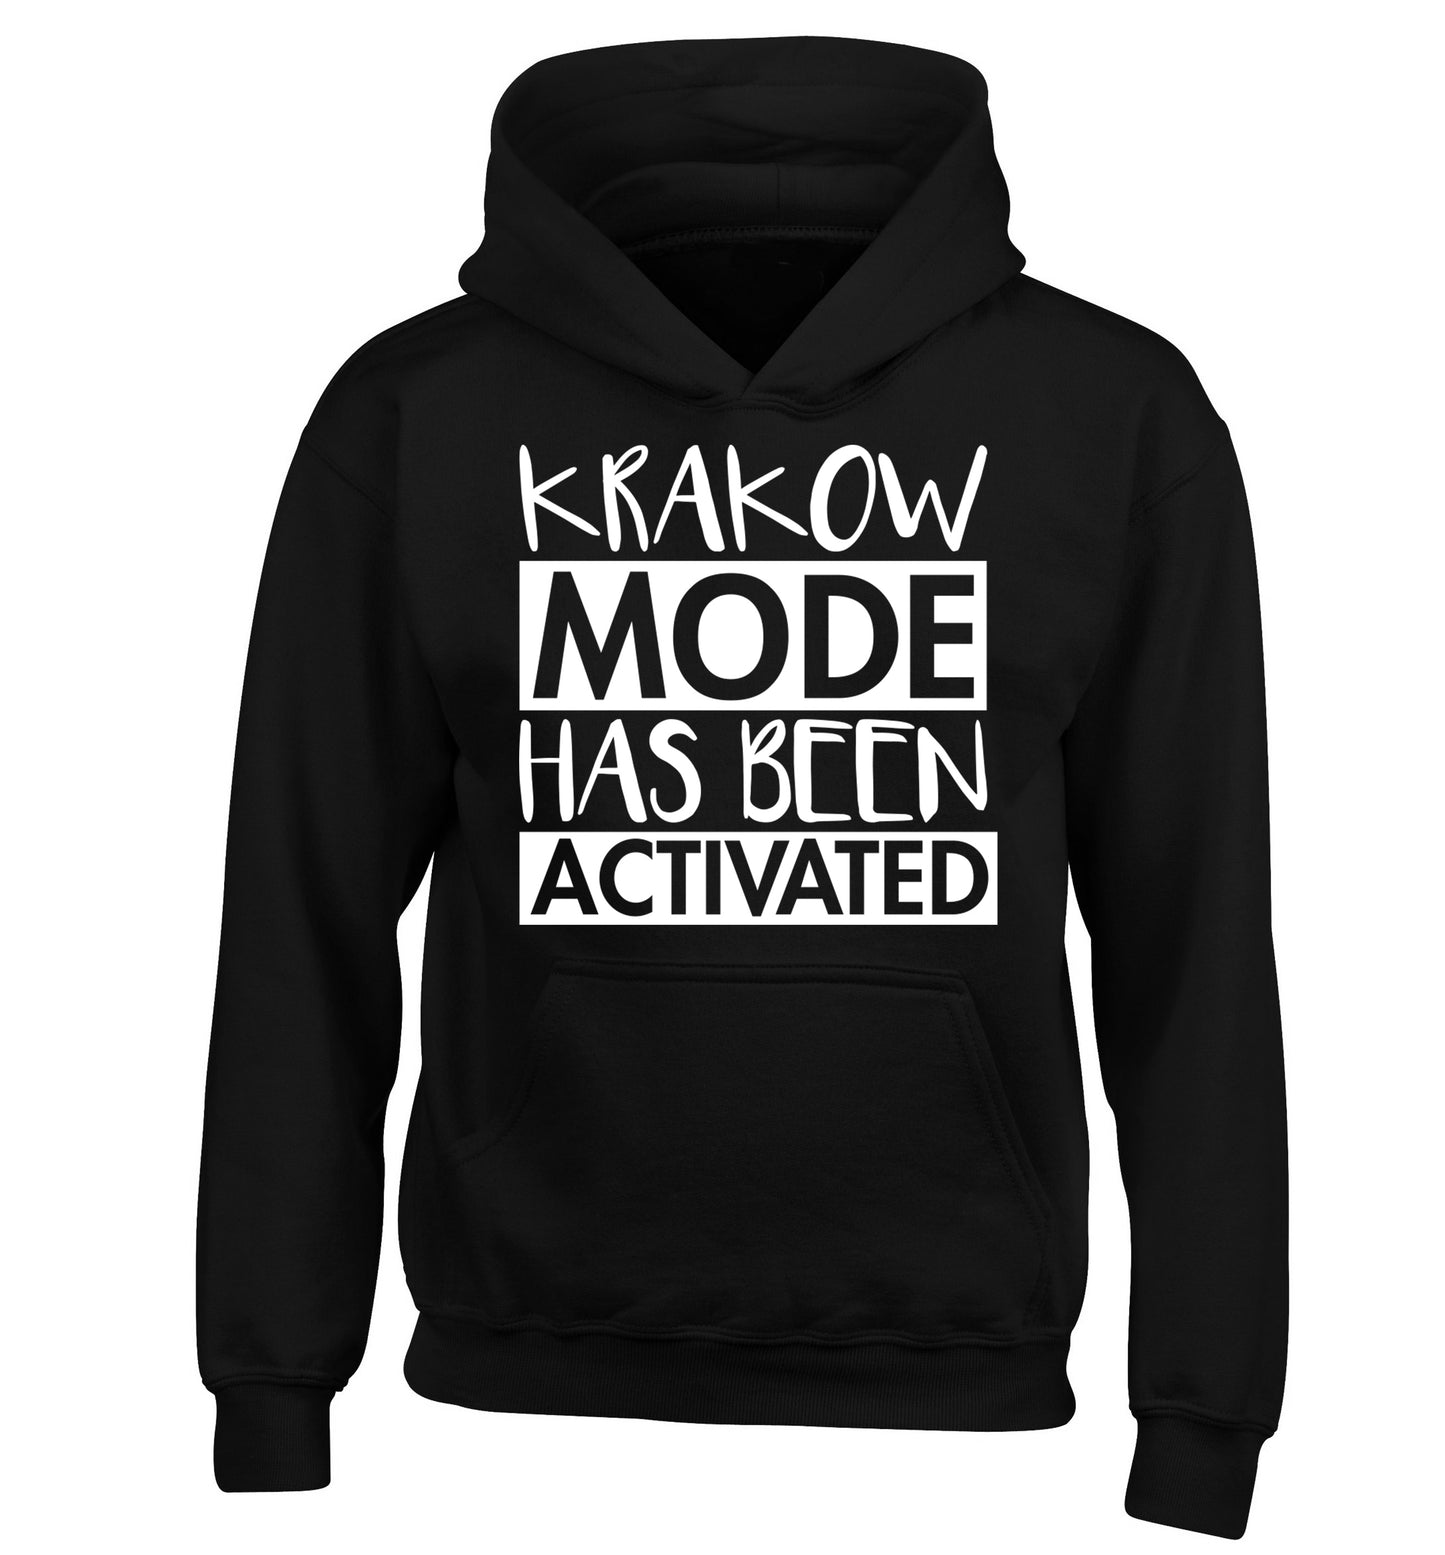 Krakow mode has been activated children's black hoodie 12-13 Years